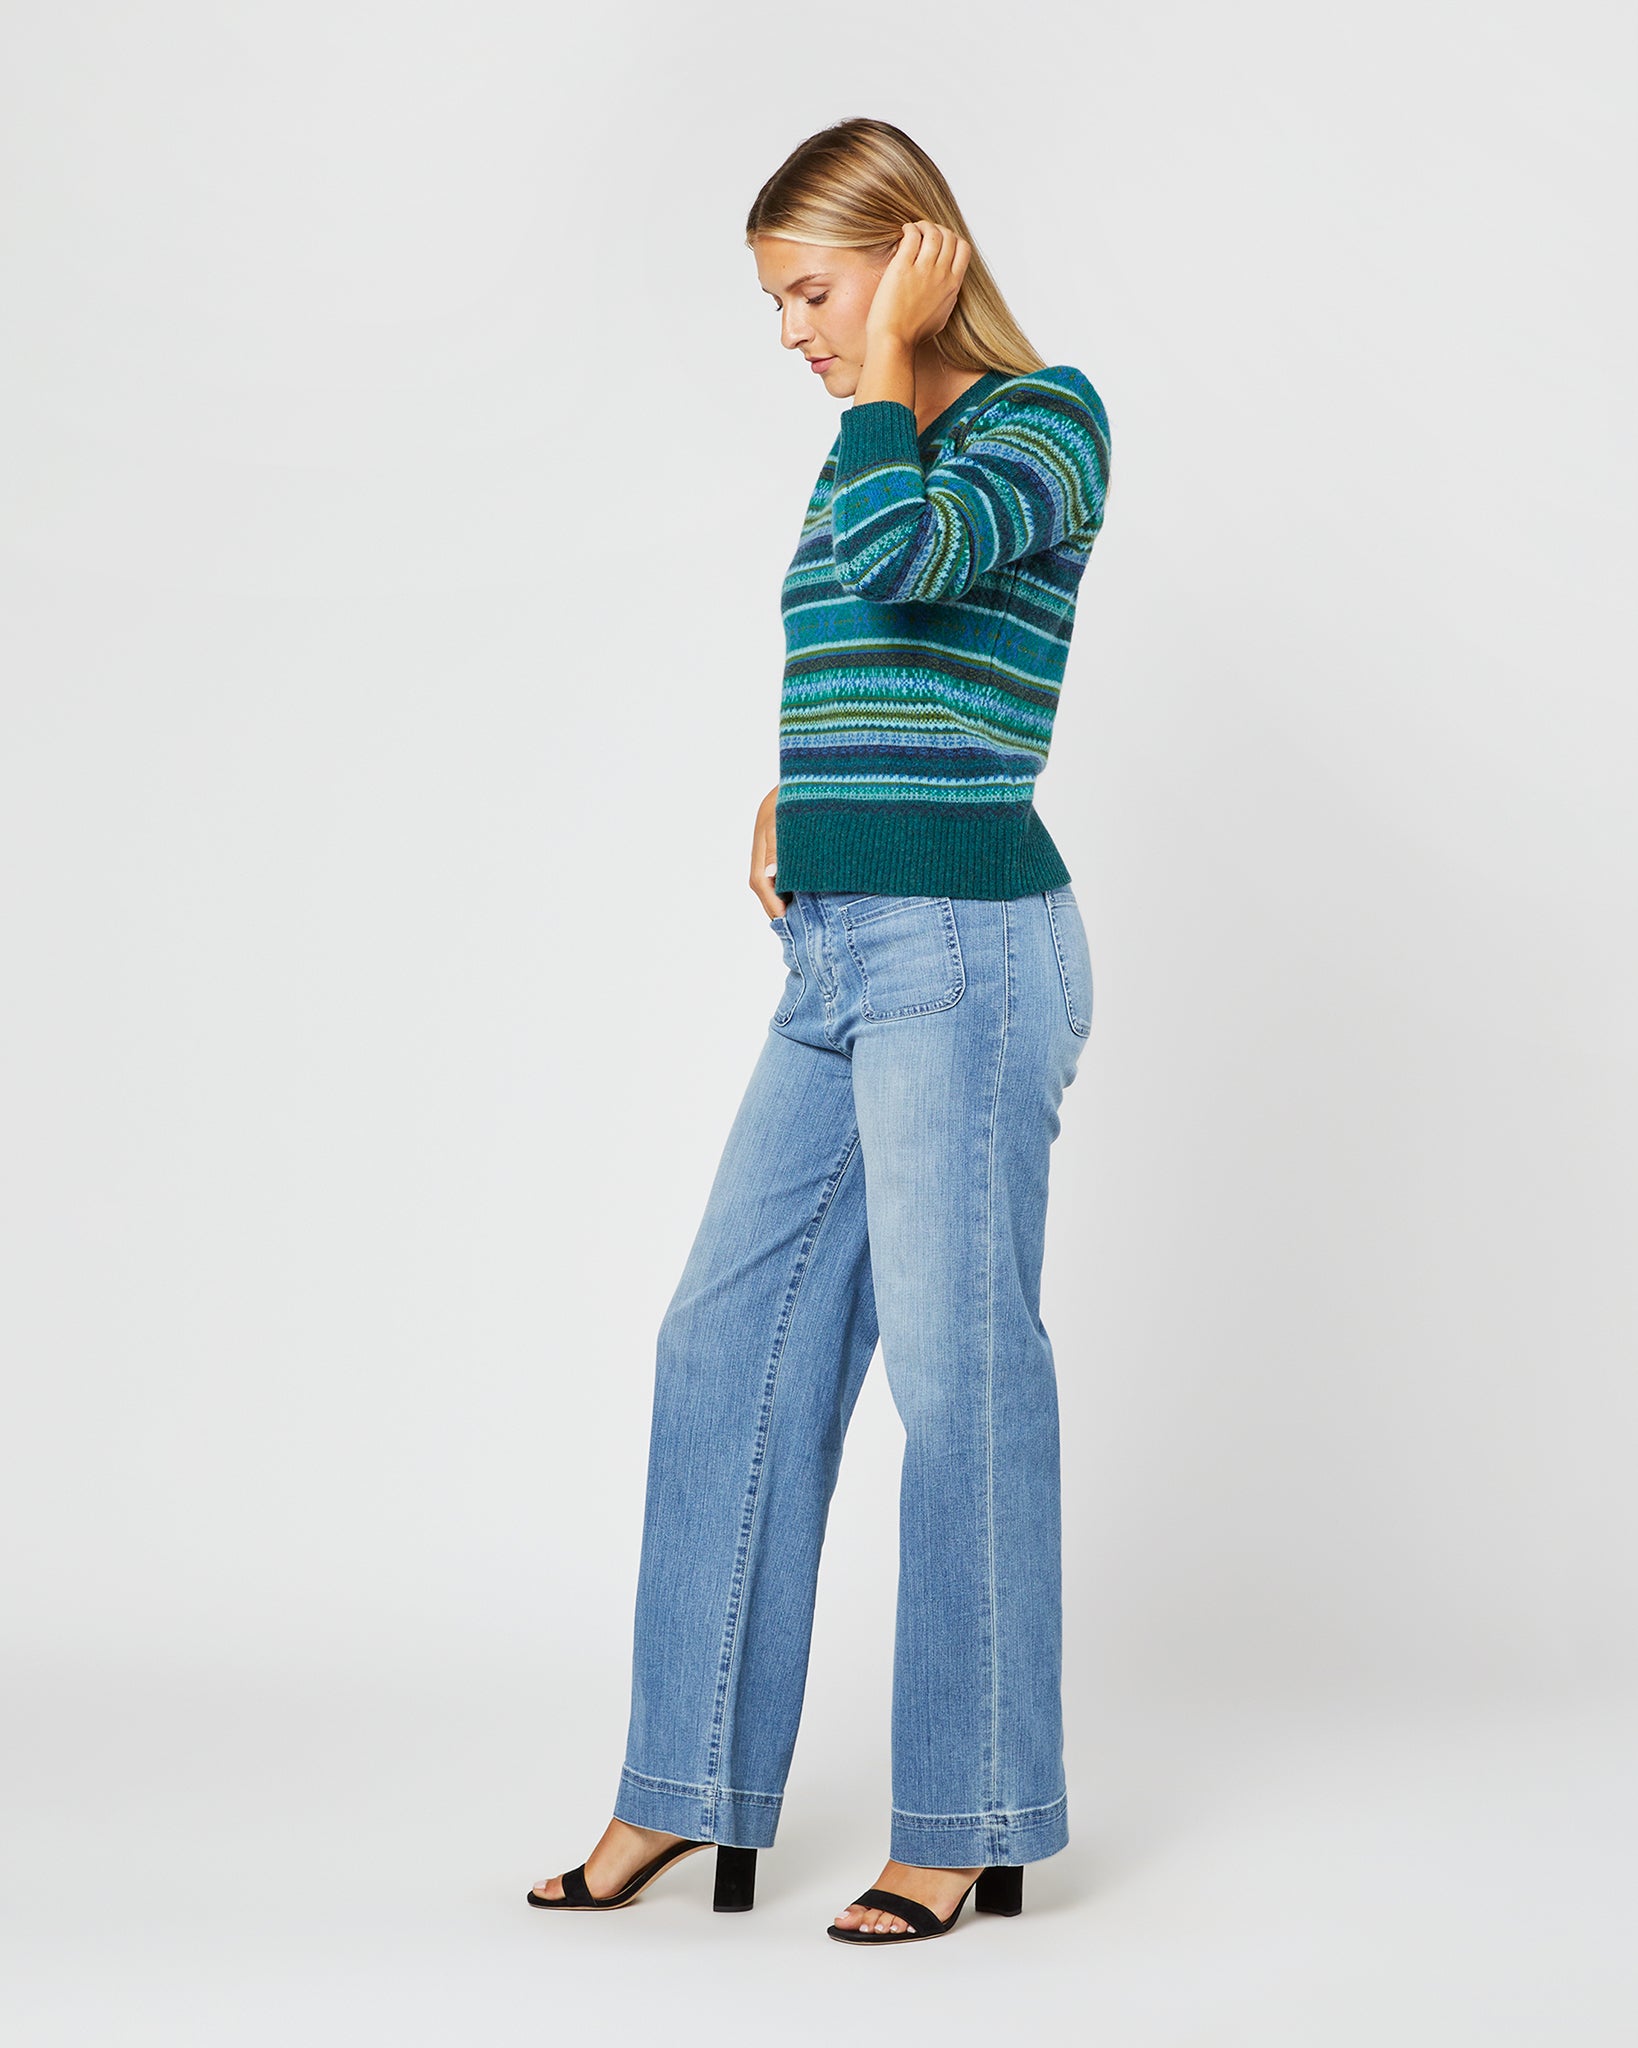 Giselle Fairisle Sweater in Cedar/Blue Multi Merino Wool